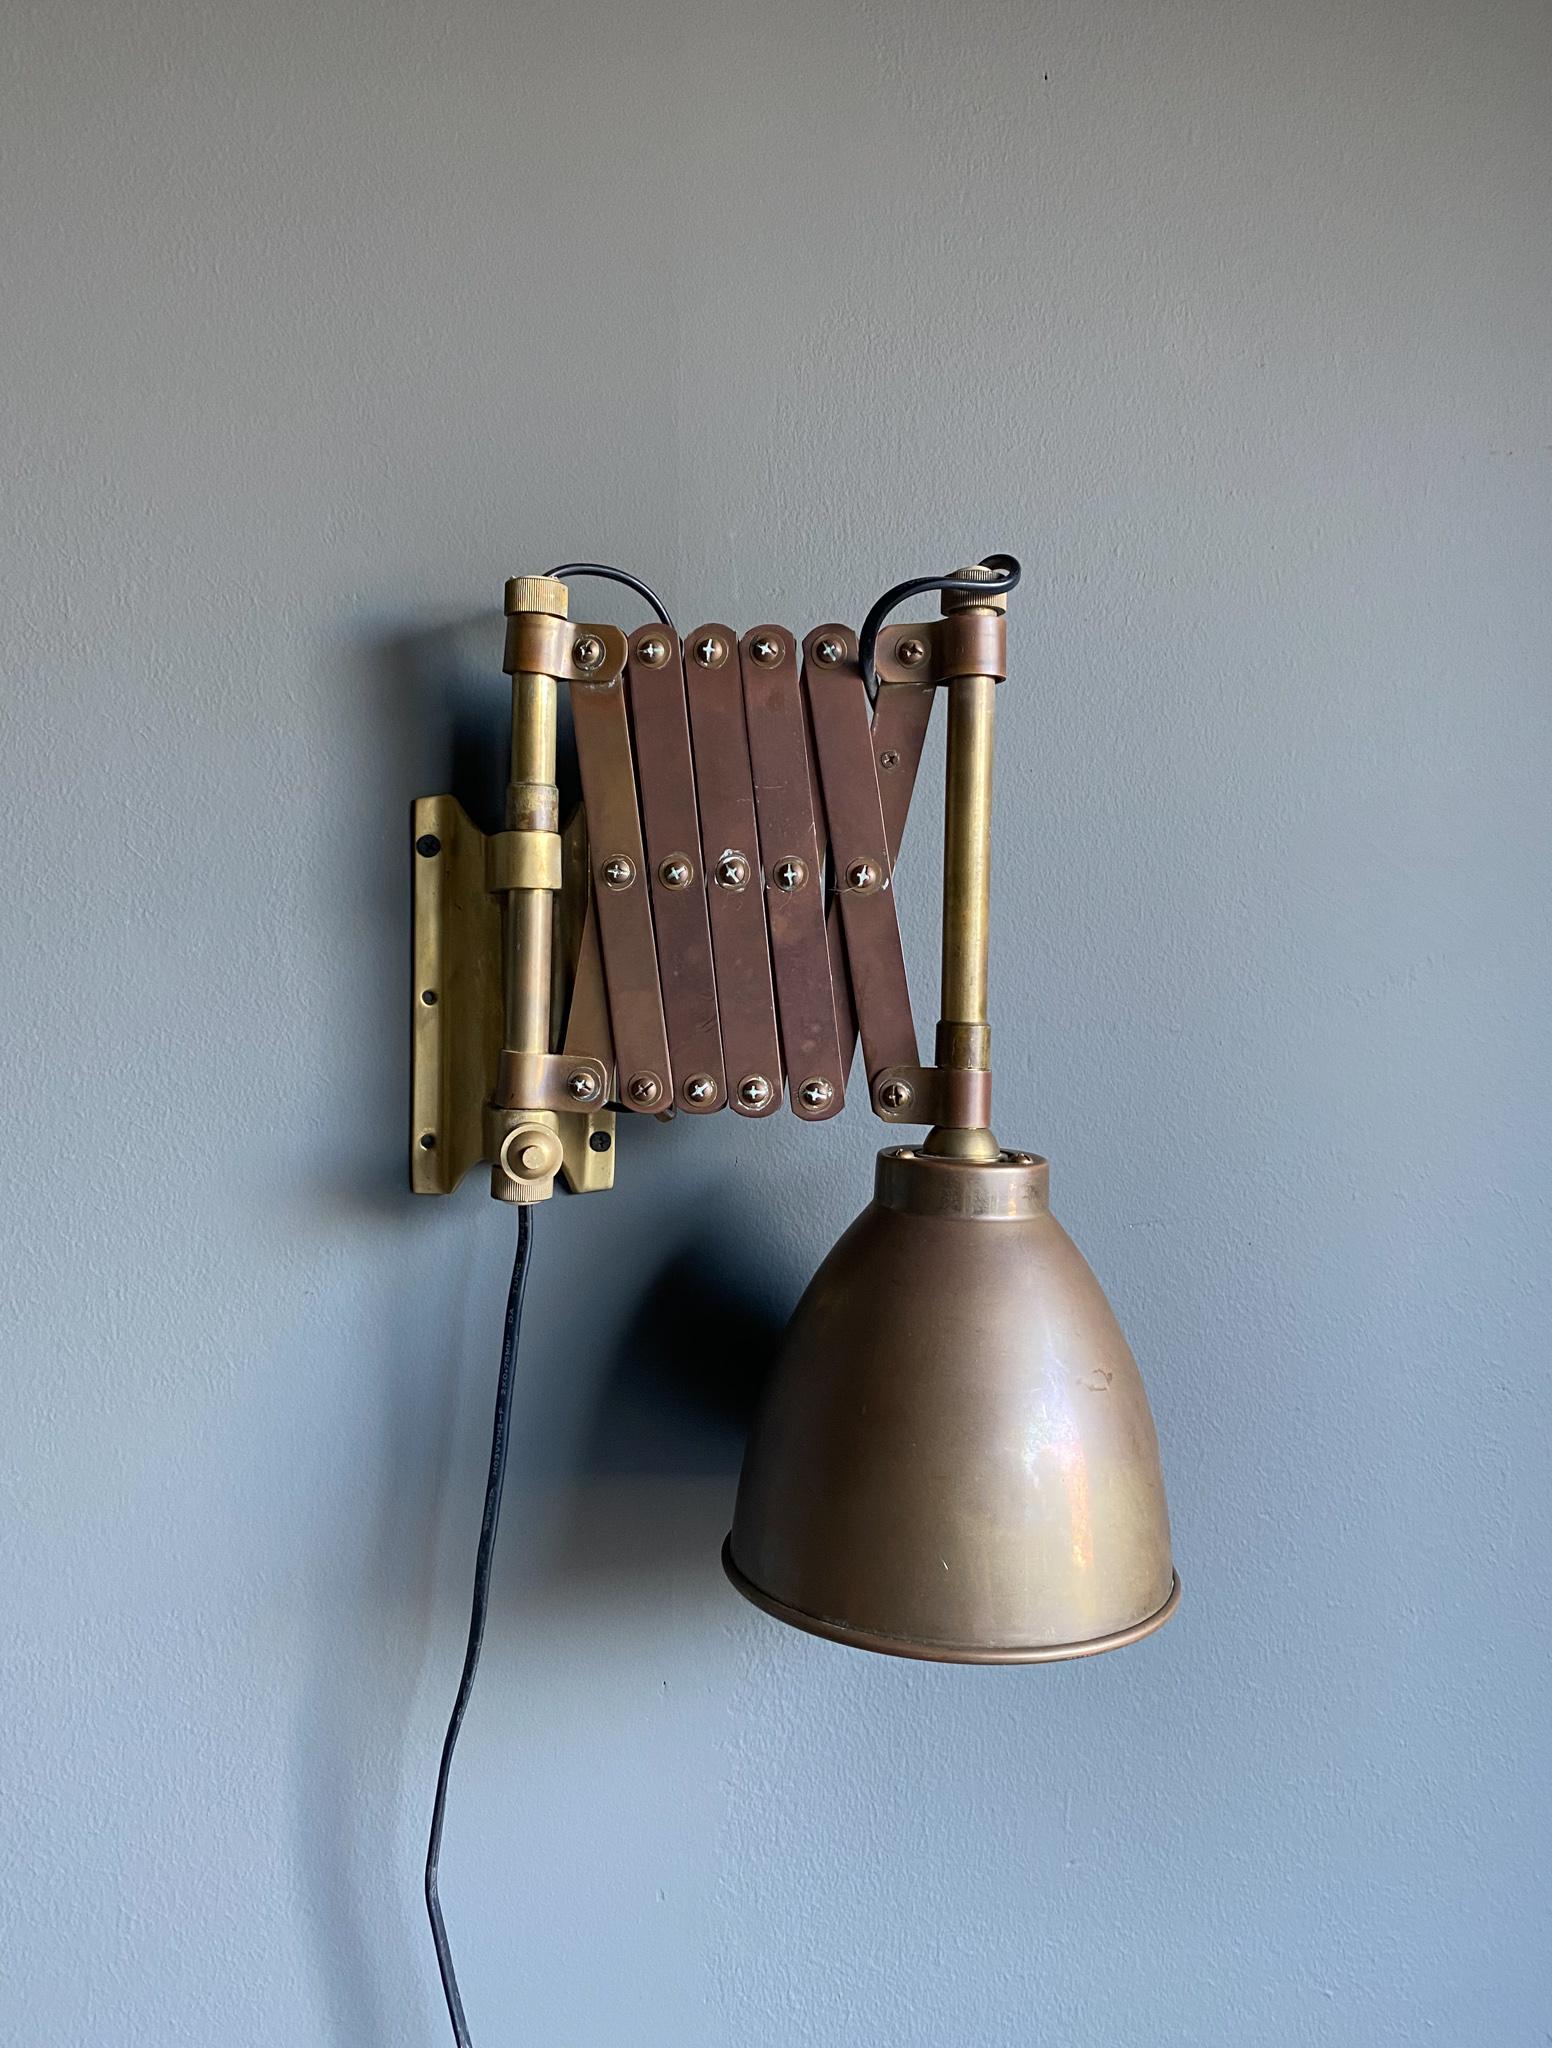 Industrielle Scherenwandlampe aus Messing, 1950er Jahre. Schöne originale Patina auf dem Messing. Diese Lampe reicht von 11